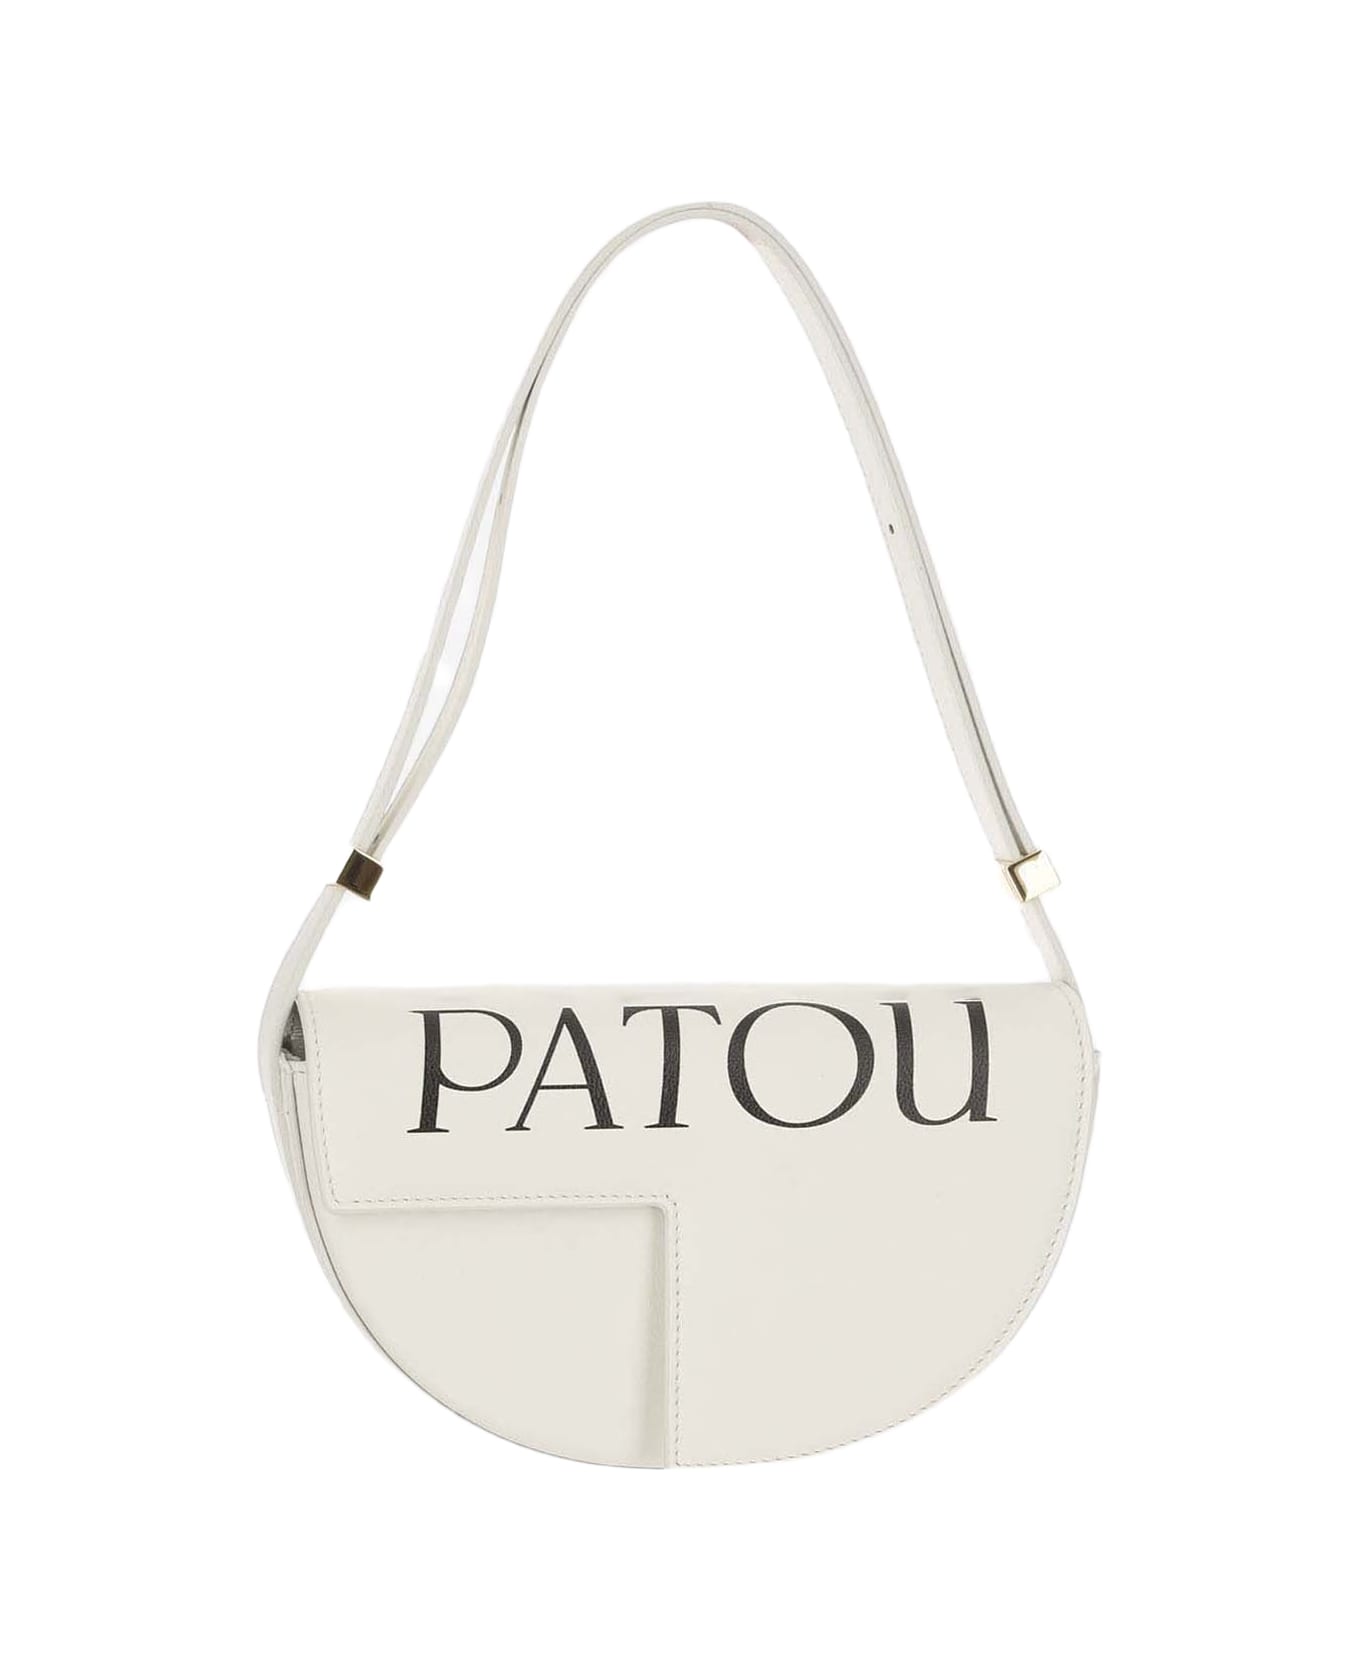 Patou Le Petit Patou Bag - White ショルダーバッグ